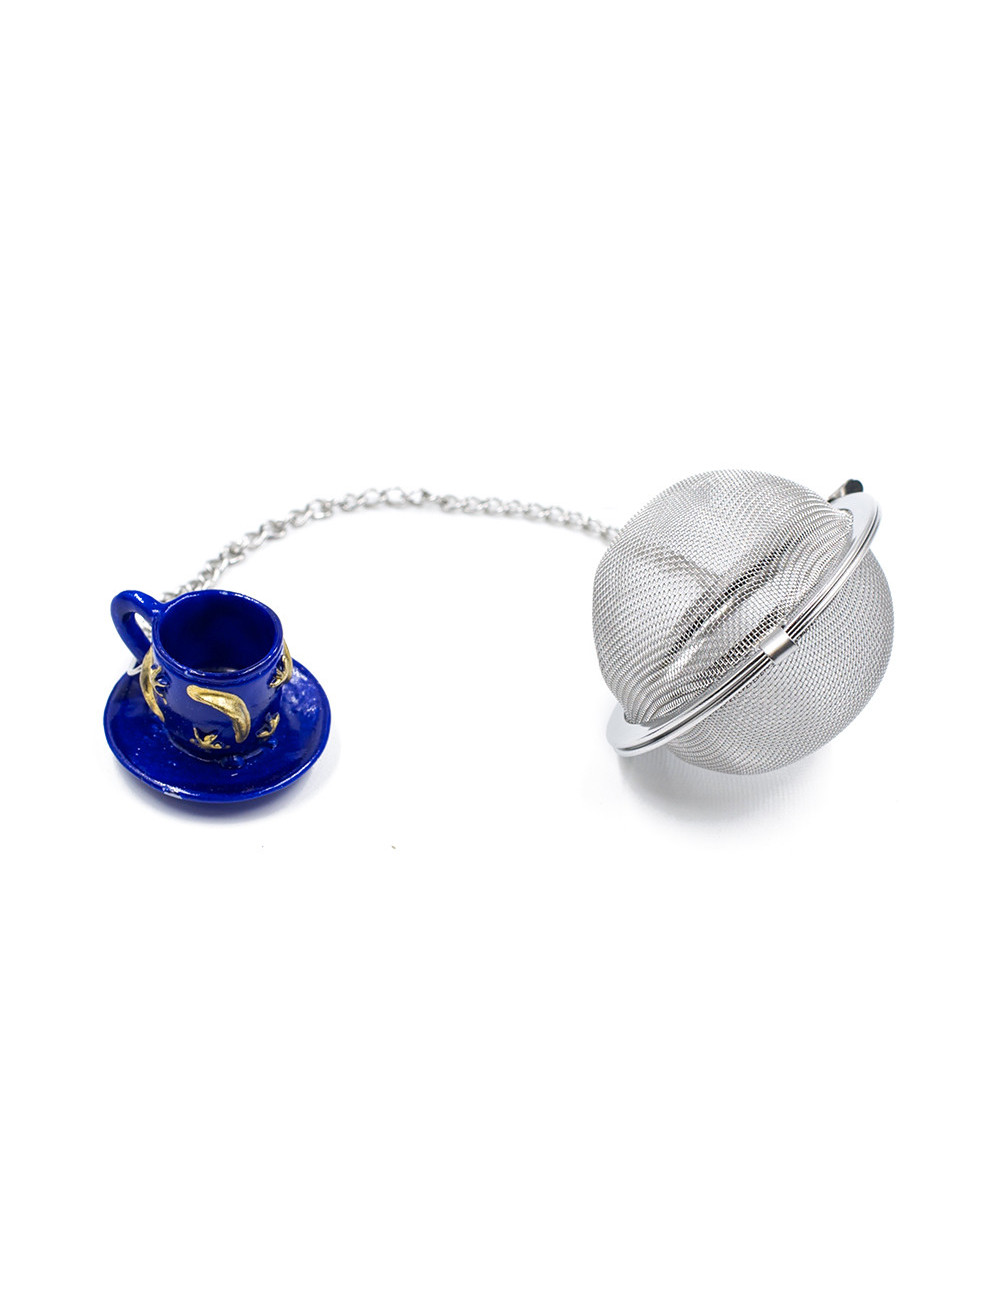 Infusore a sfera Ø 5 cm in acciaio inox con ciondolo colorato - La Pianta del Tè shop online